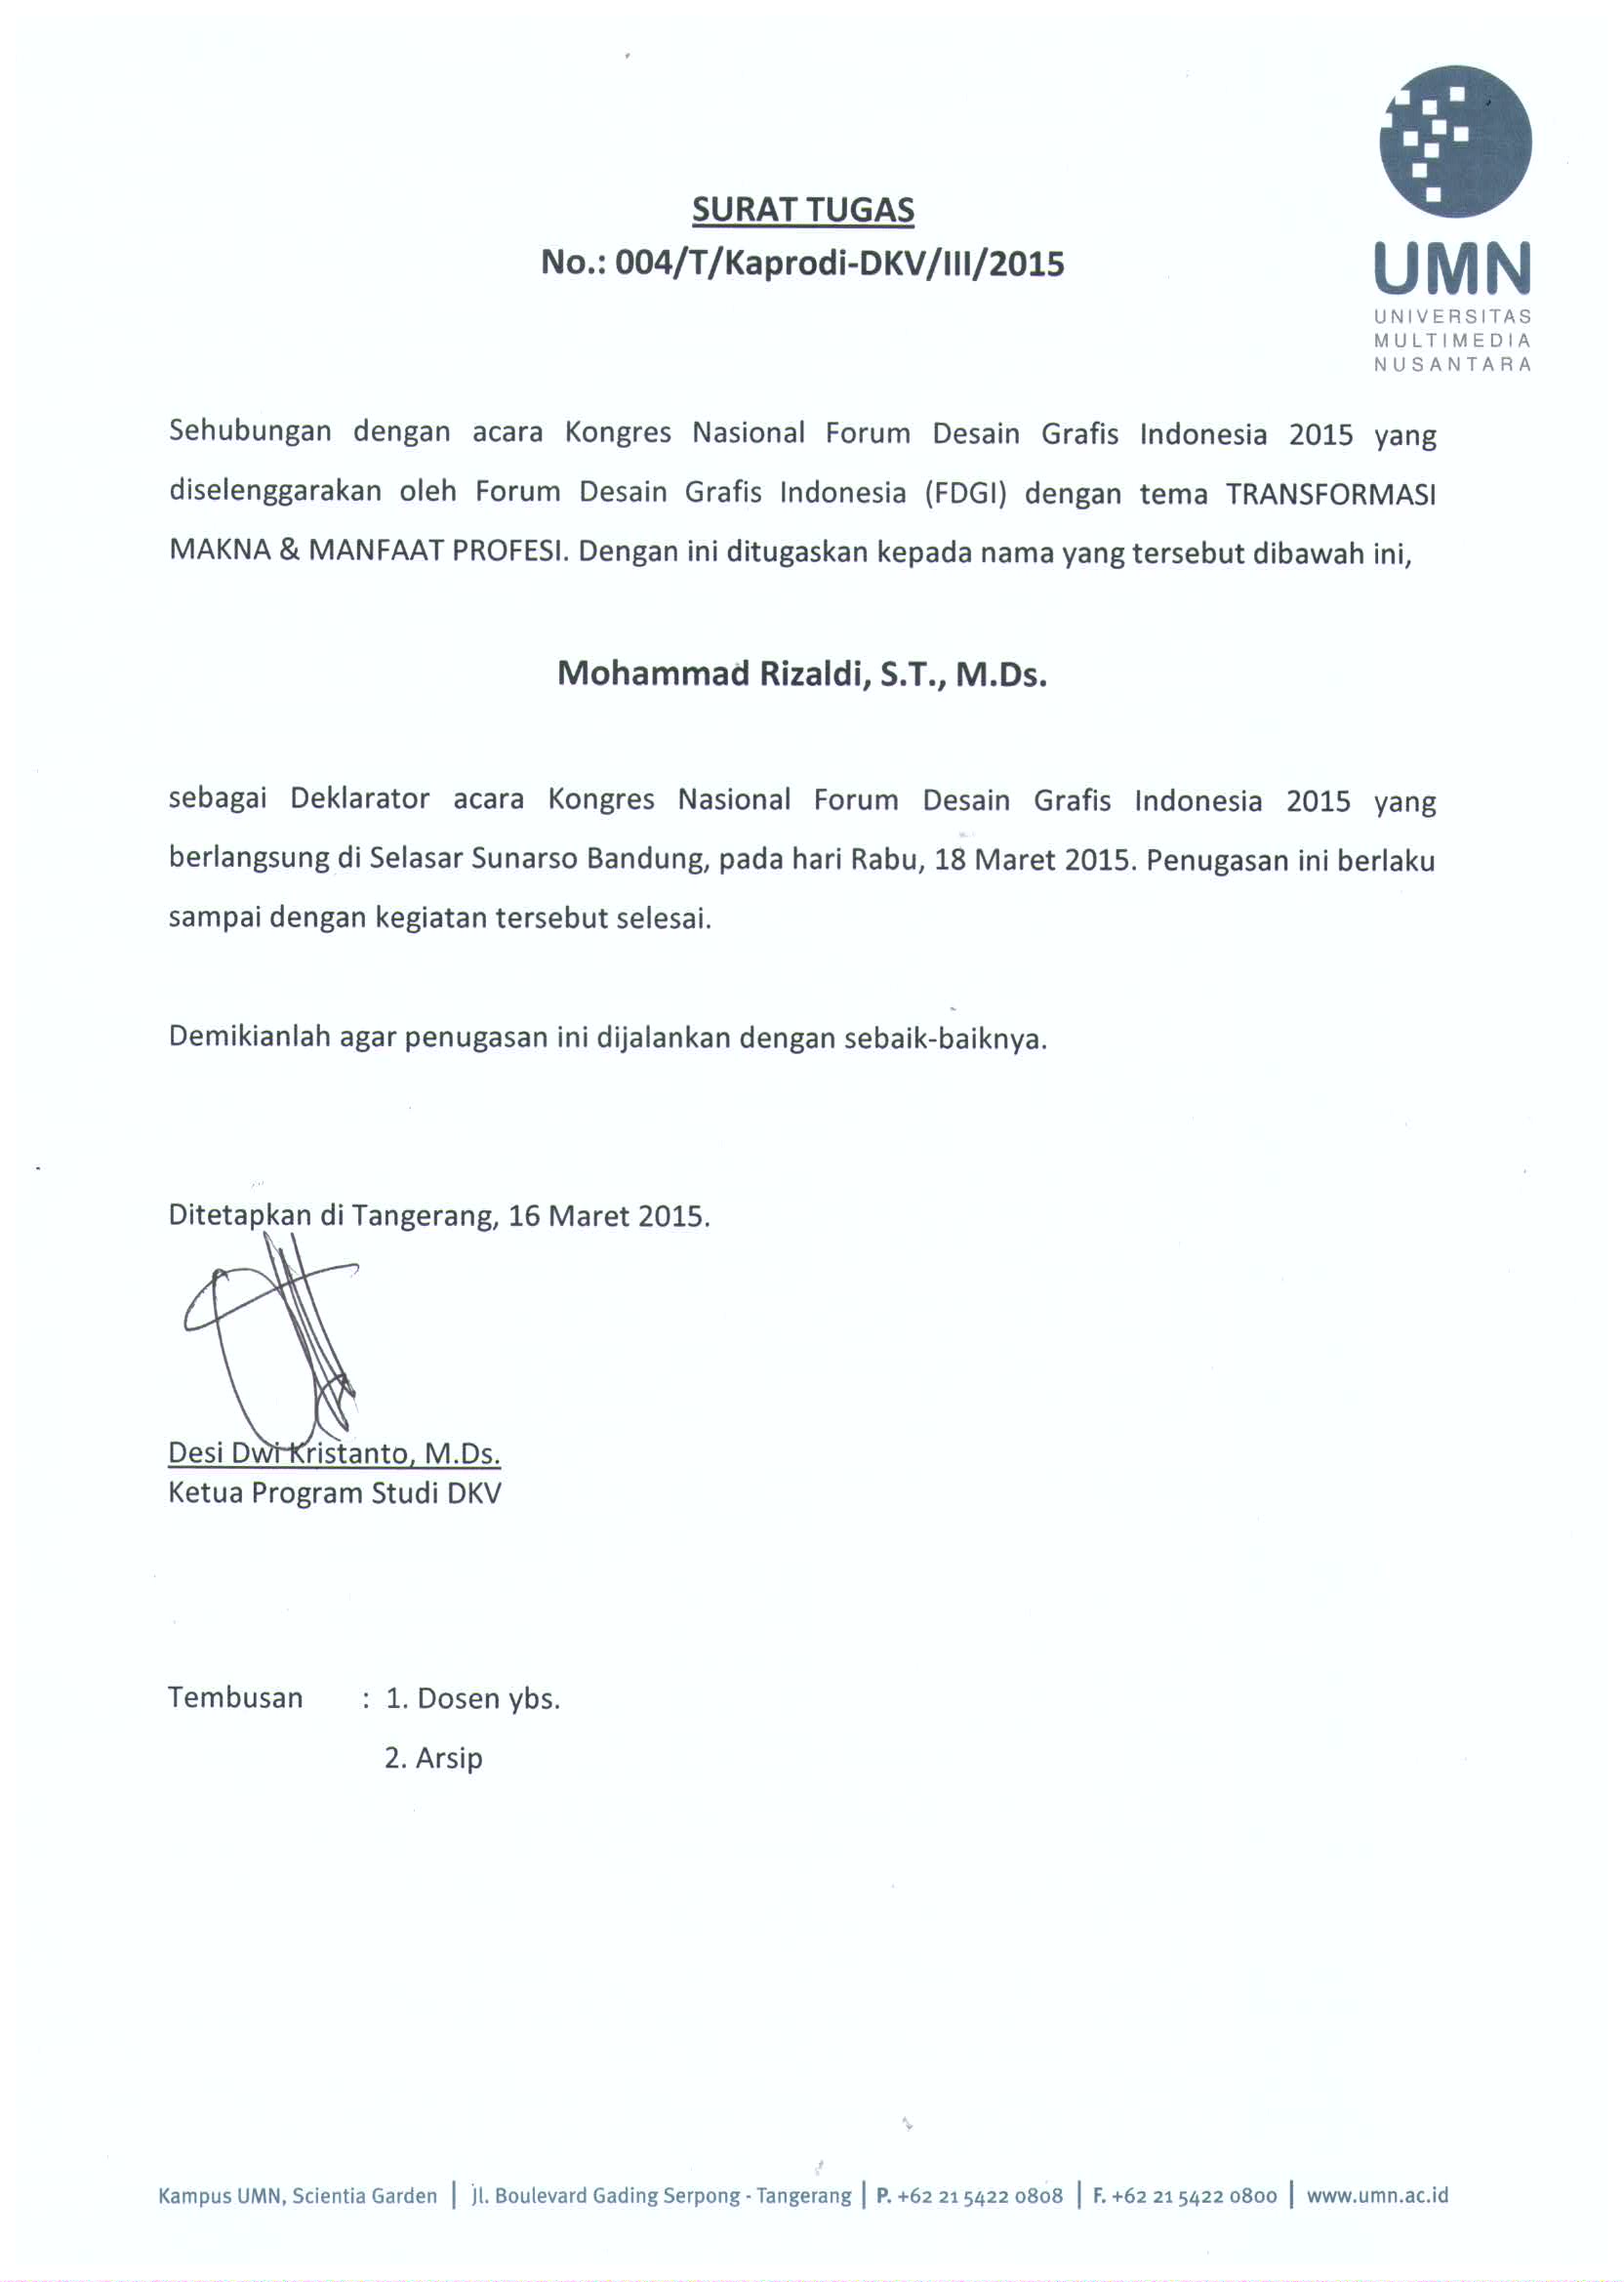 Surat Tugas Dan Surat Keputusan Untuk Rizaldi At Umn